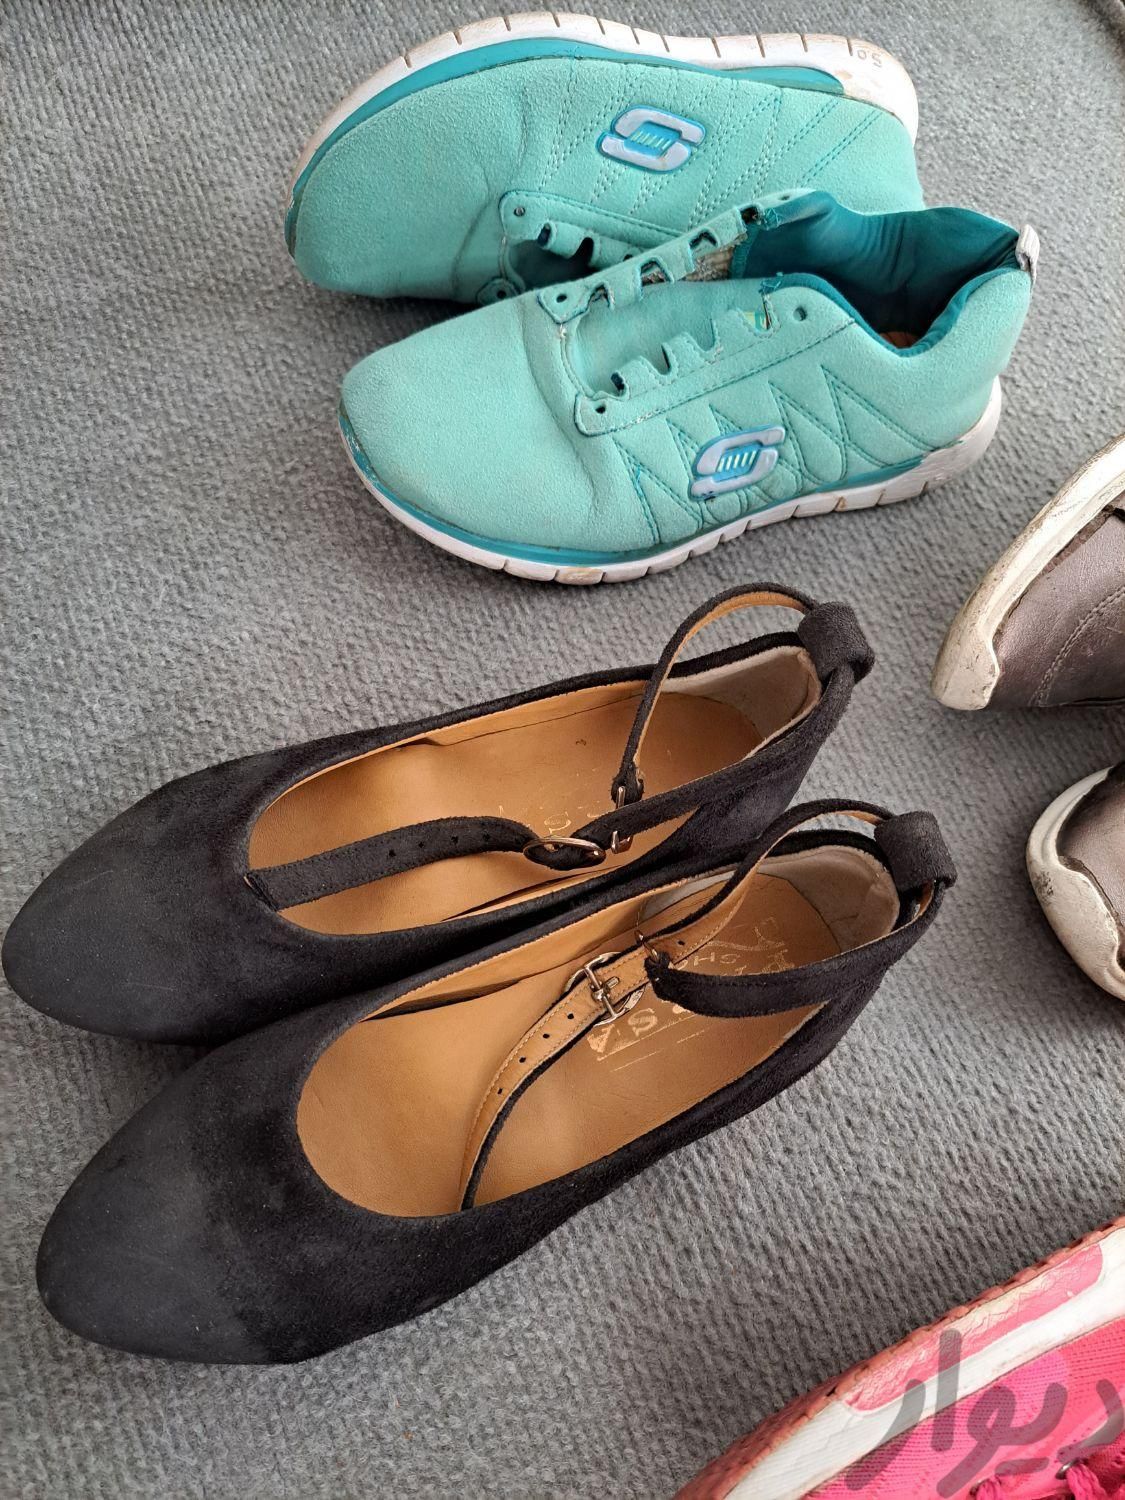 تعدادی کفش کتونی کالج|کیف، کفش و کمربند|همدان, |دیوار